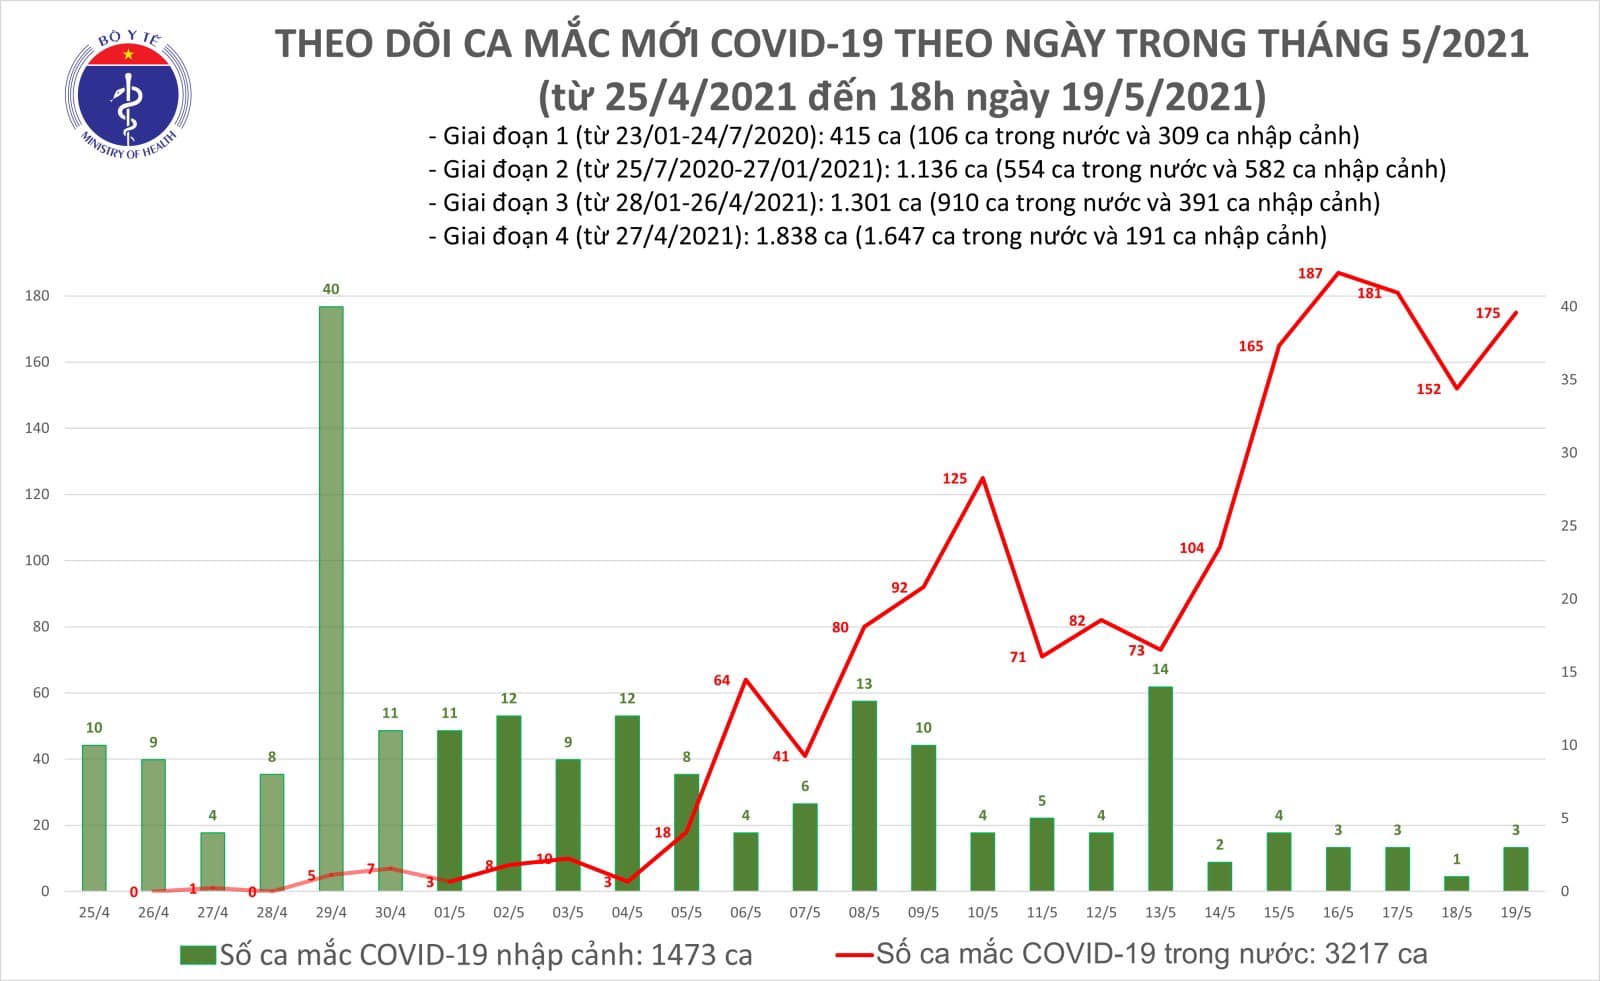 Tối 19/5: Thêm 109 ca mắc Covid-19 trong nước, Bắc Ninh và Bắc Giang chiếm 99 ca